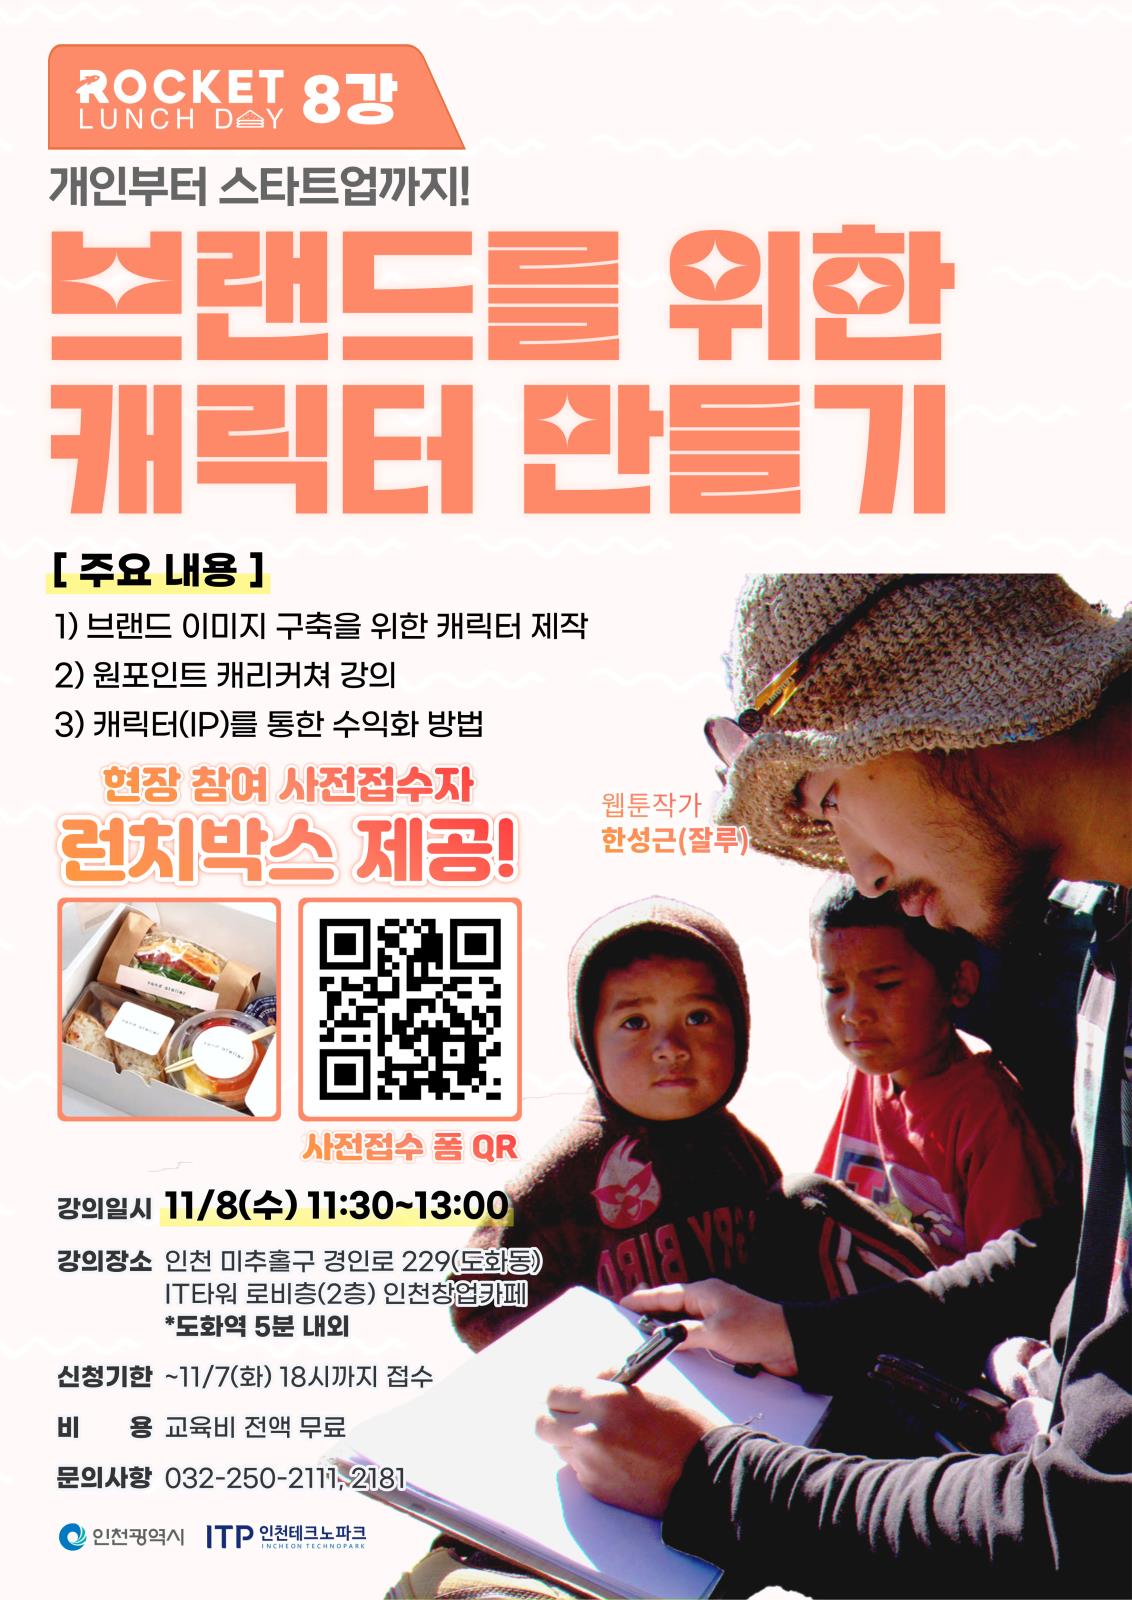 무료특강 인천창업카페 로켓런치데이 8강 브랜드를 위한 캐릭터 만들기 참가자 모집!의 1번째 이미지